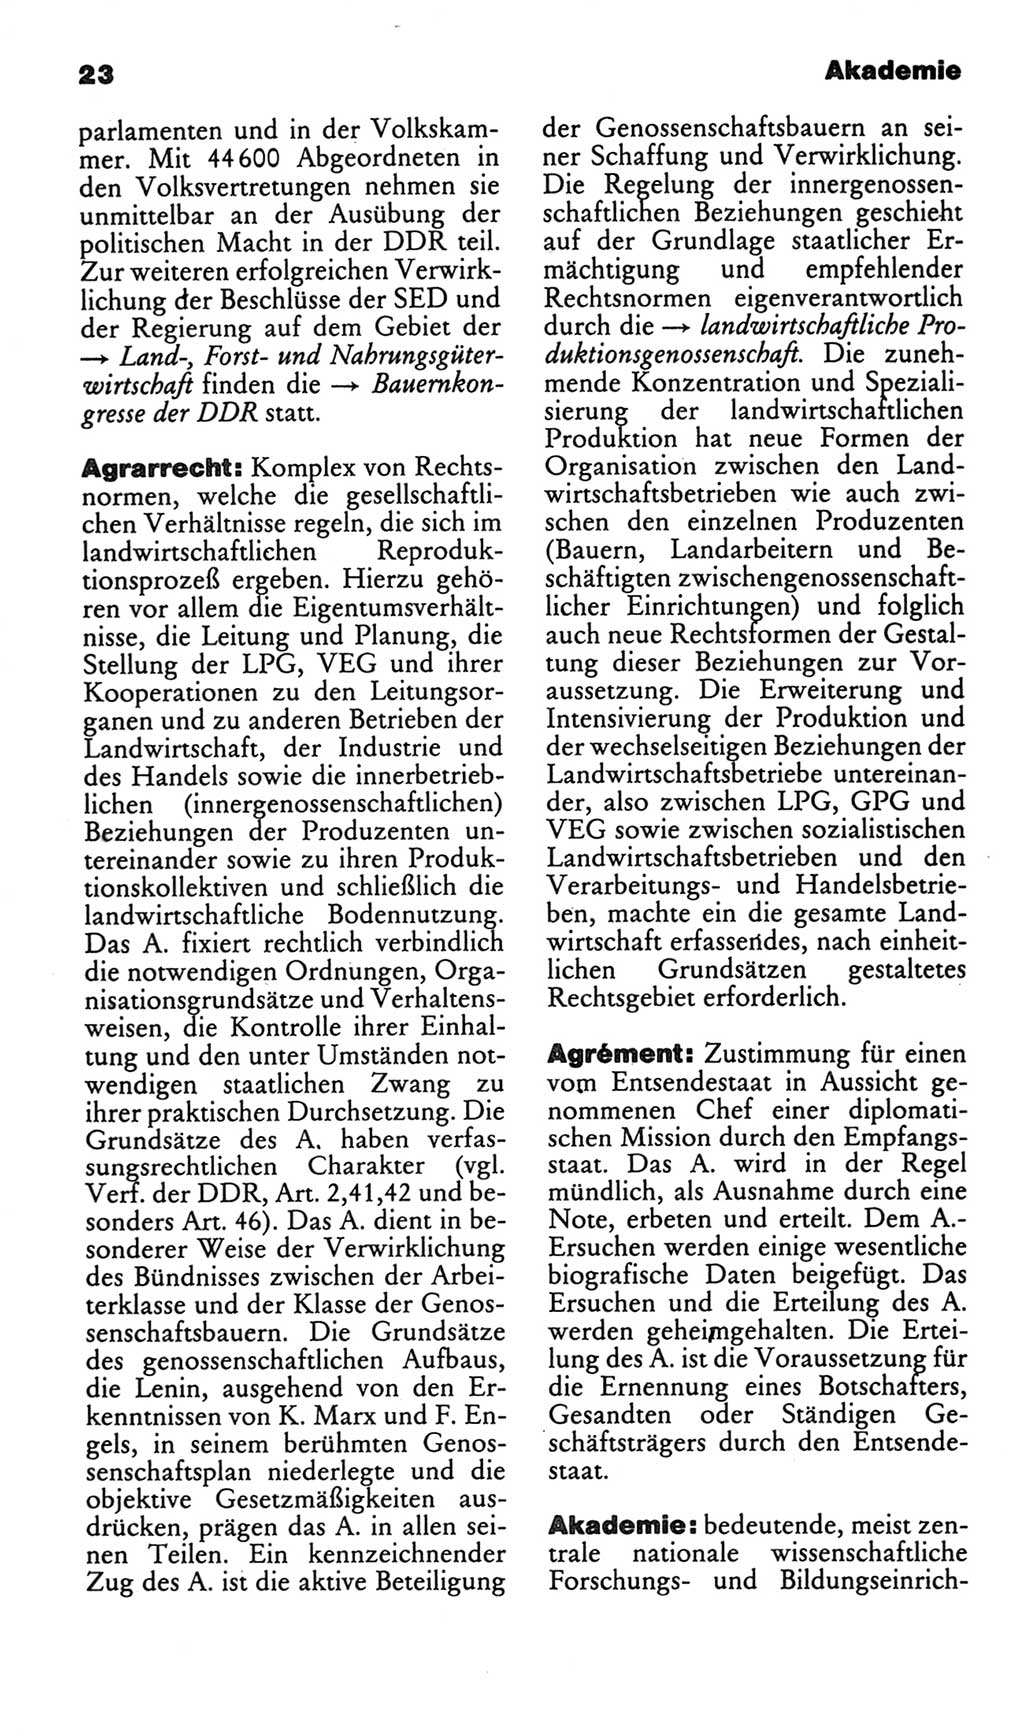 Kleines politisches Wörterbuch [Deutsche Demokratische Republik (DDR)] 1986, Seite 23 (Kl. pol. Wb. DDR 1986, S. 23)